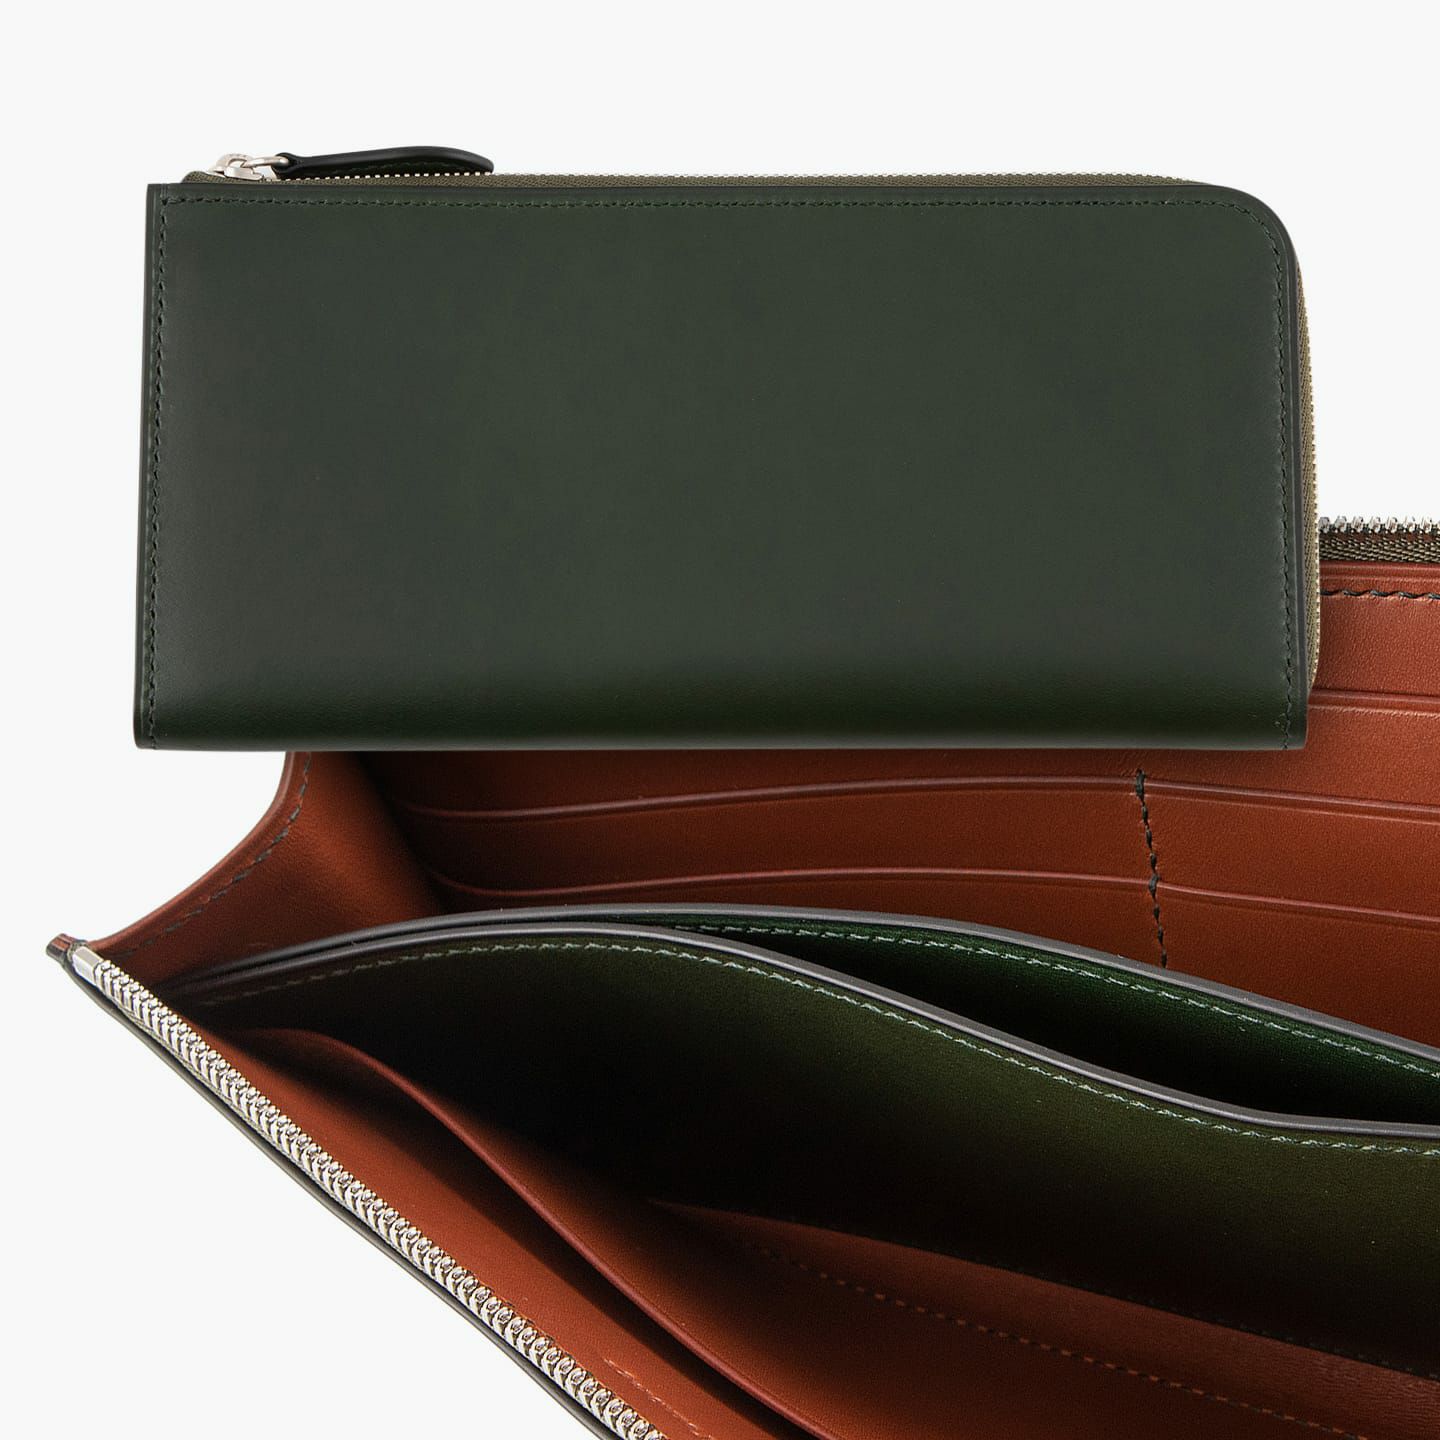 装＆内装コインポケット（イングラサット）：Green、内装（イングラサット）：Red Brown、糸色：外装＆内装コインポケットと同系色、ファスナー：Silver、引き手：外装と同じ革